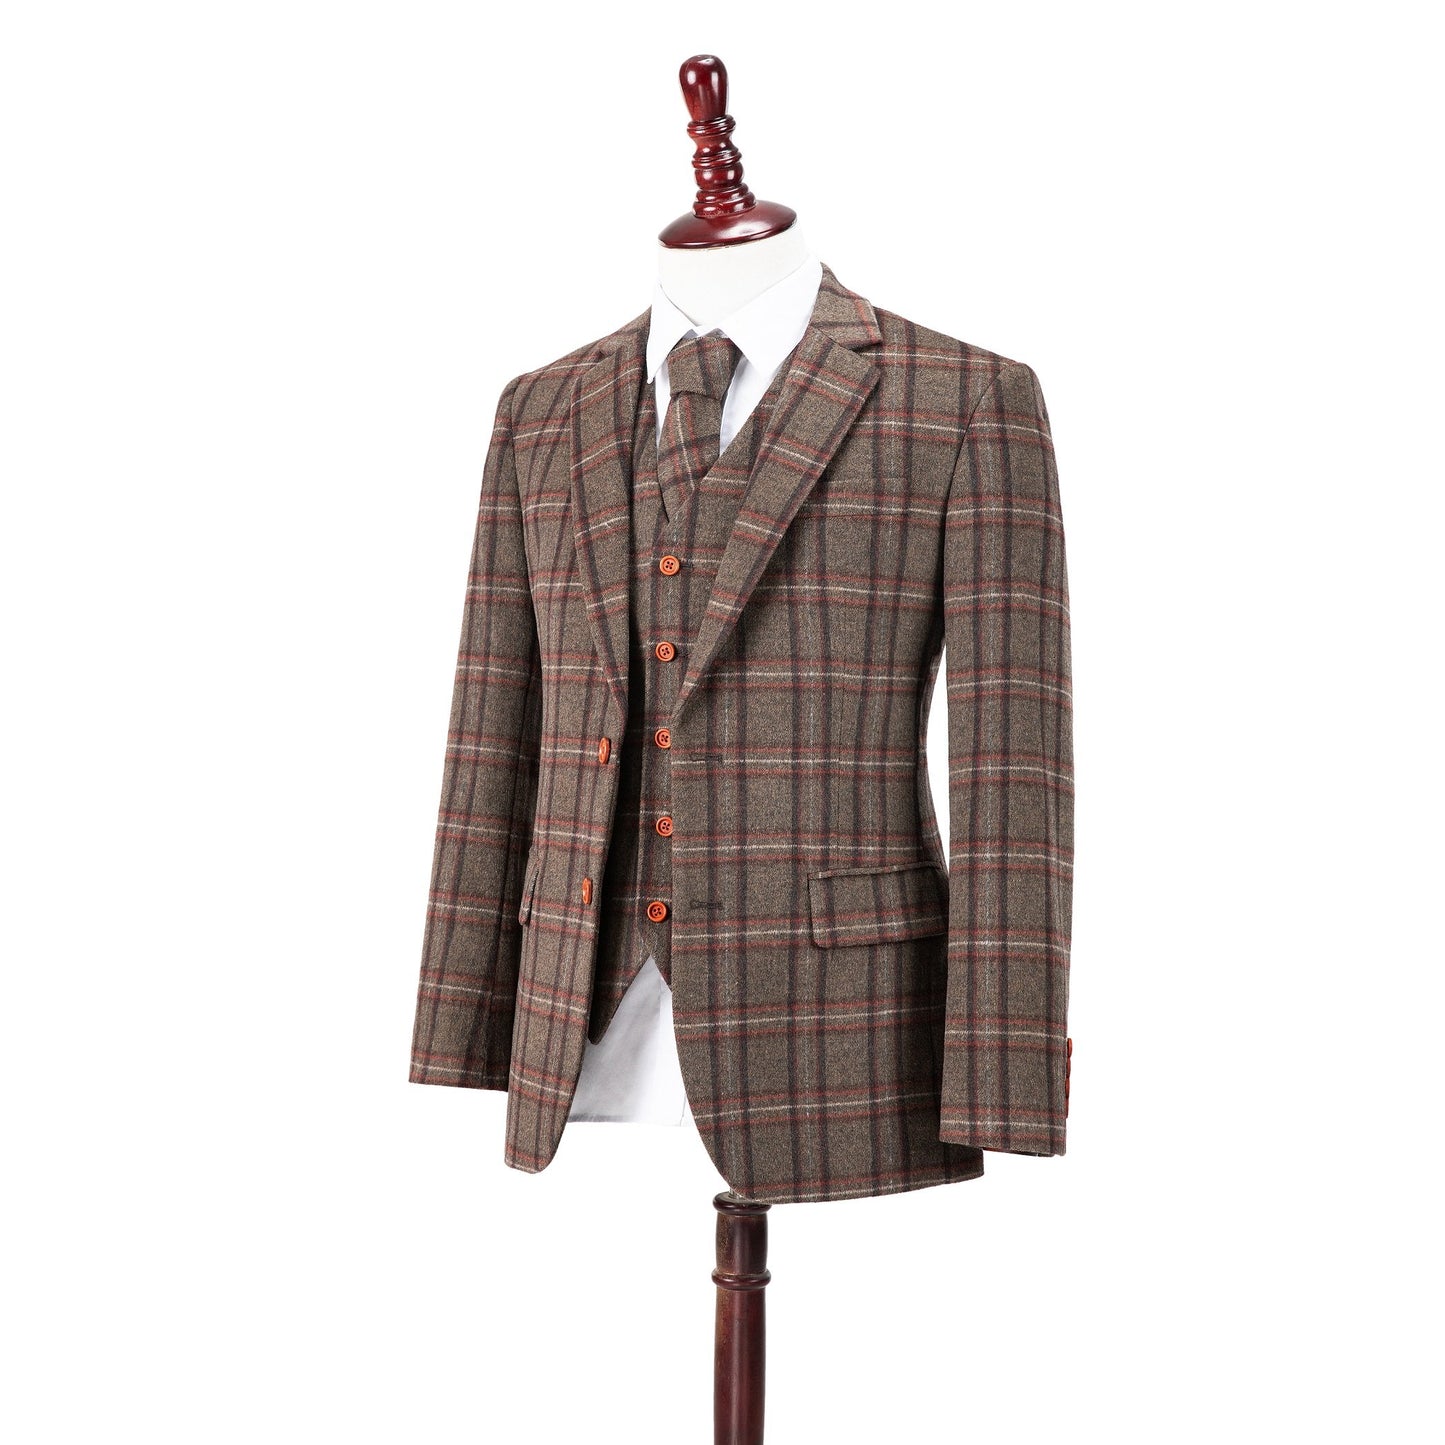 Brown Windowpane Plaid Tweed Suit